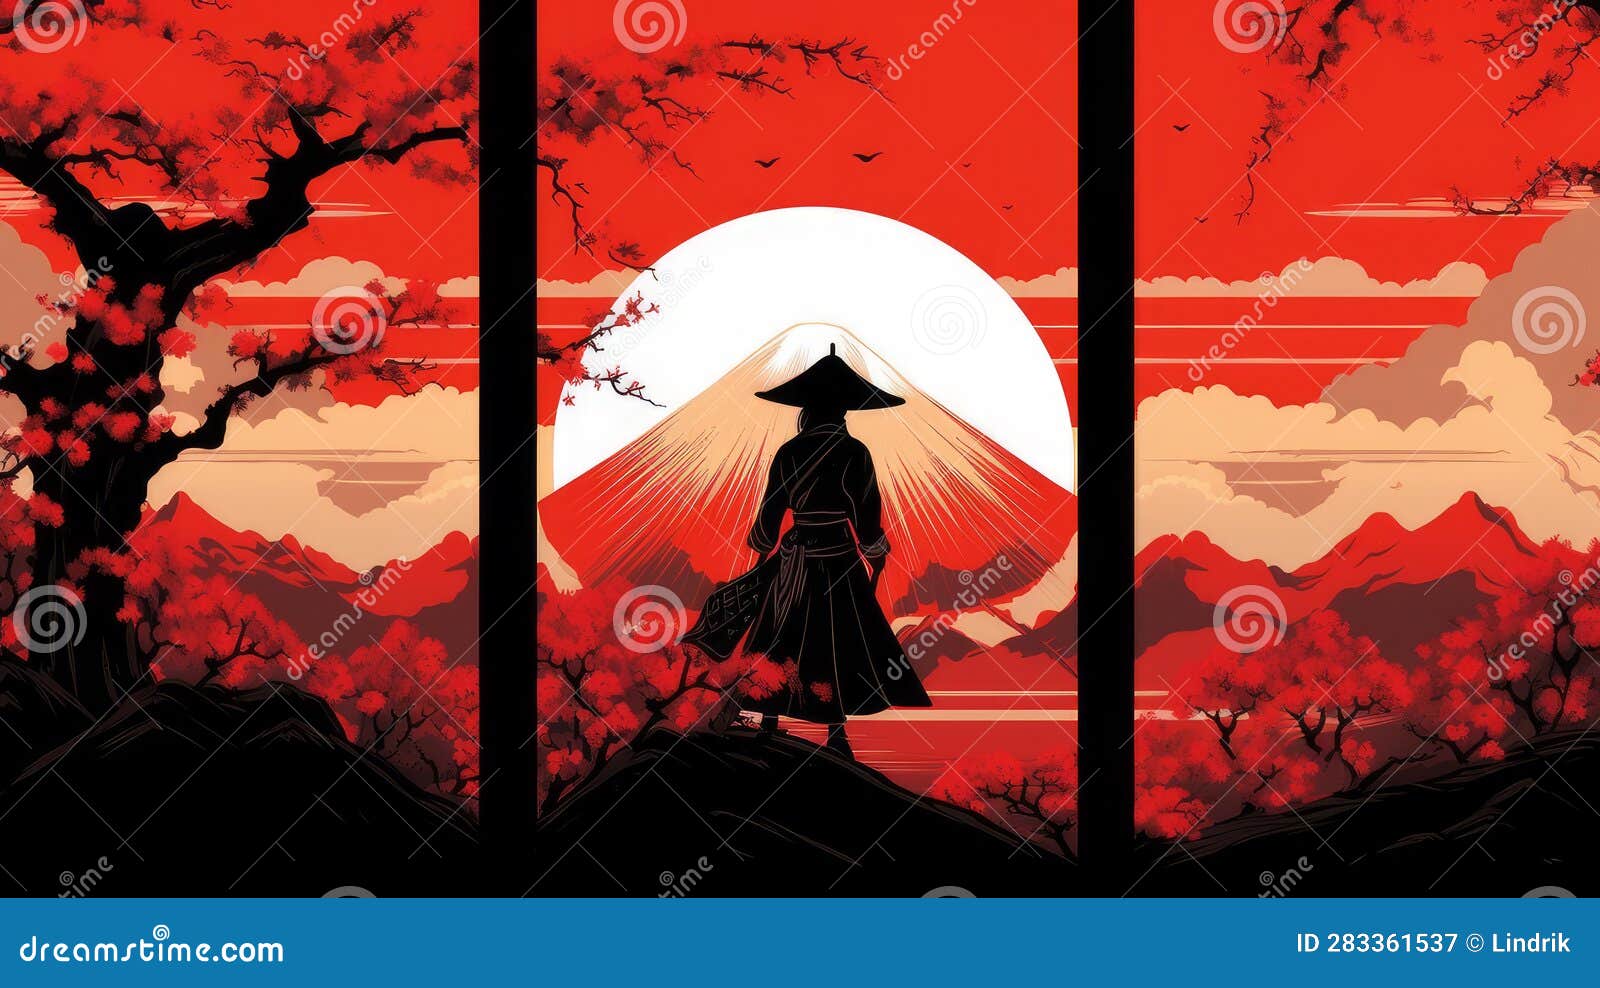 Download Fuji Choko Carnival Colorful Anime Wallpaper | Wallpapers.com